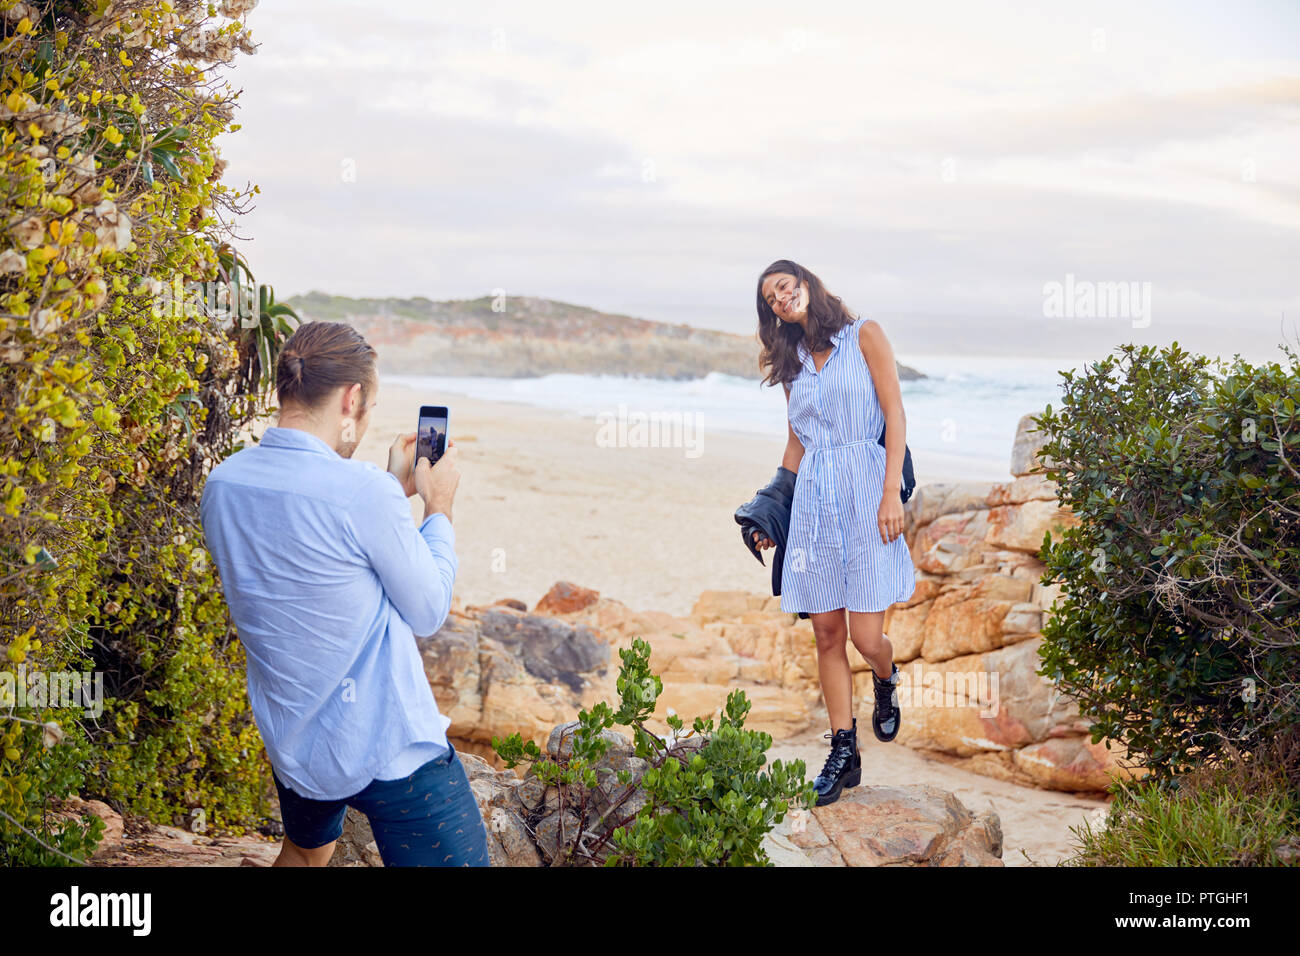 Giovane con smart phone fotografare la ragazza con l'oceano sullo sfondo Foto Stock